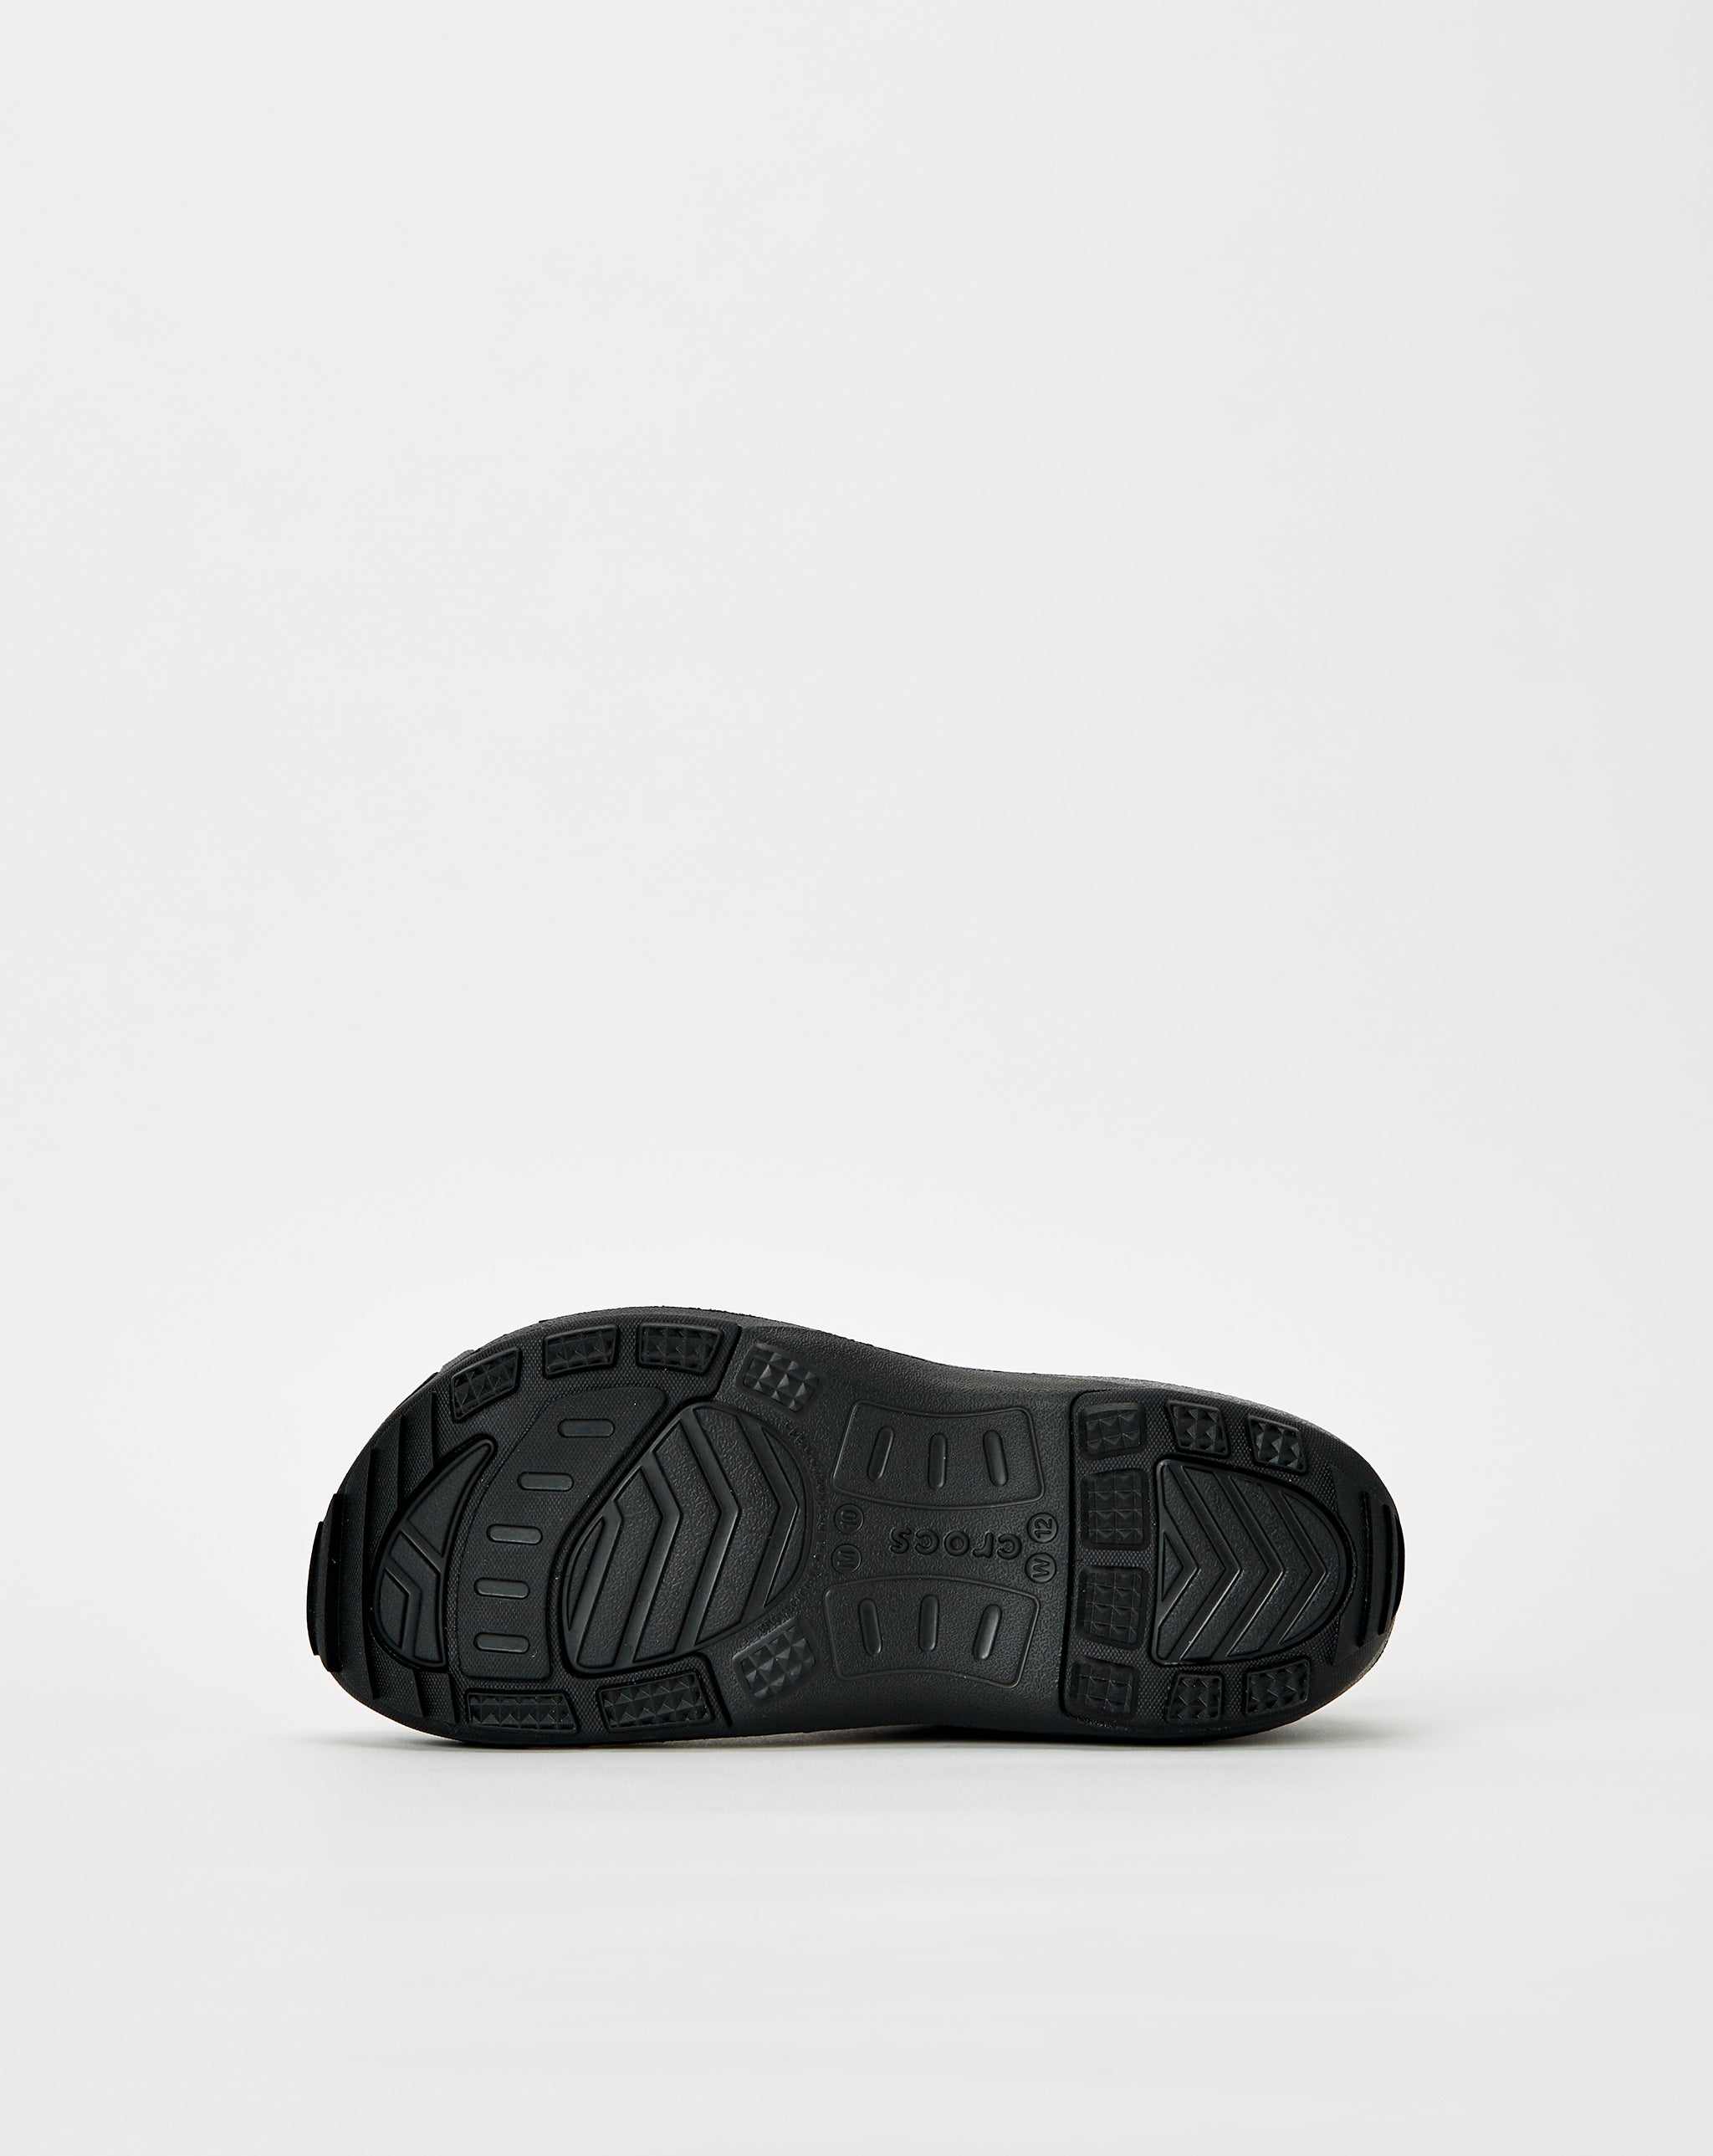 Crocs rejina pyo white leather sandal  - Cheap Urlfreeze Jordan outlet